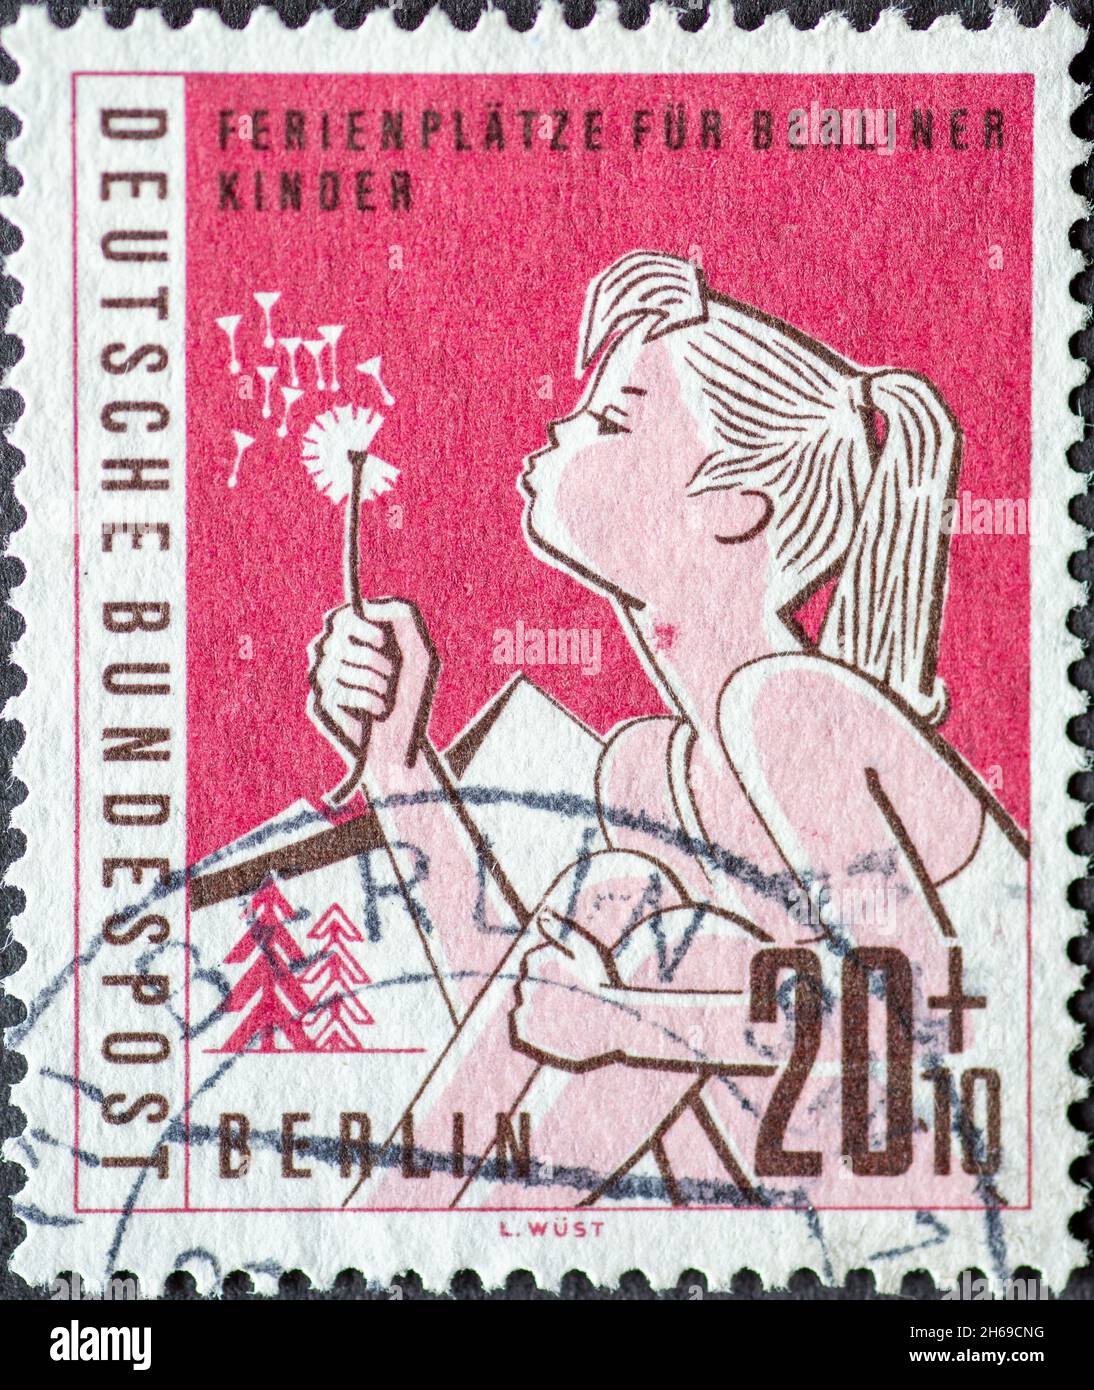 DEUTSCHLAND, Berlin - UM 1960: Eine Briefmarke aus Deutschland, Berlin hat das Motto: Ferienorte für Kinder in Berlin Hier: Mädchen mit Dandelion in t Stockfoto